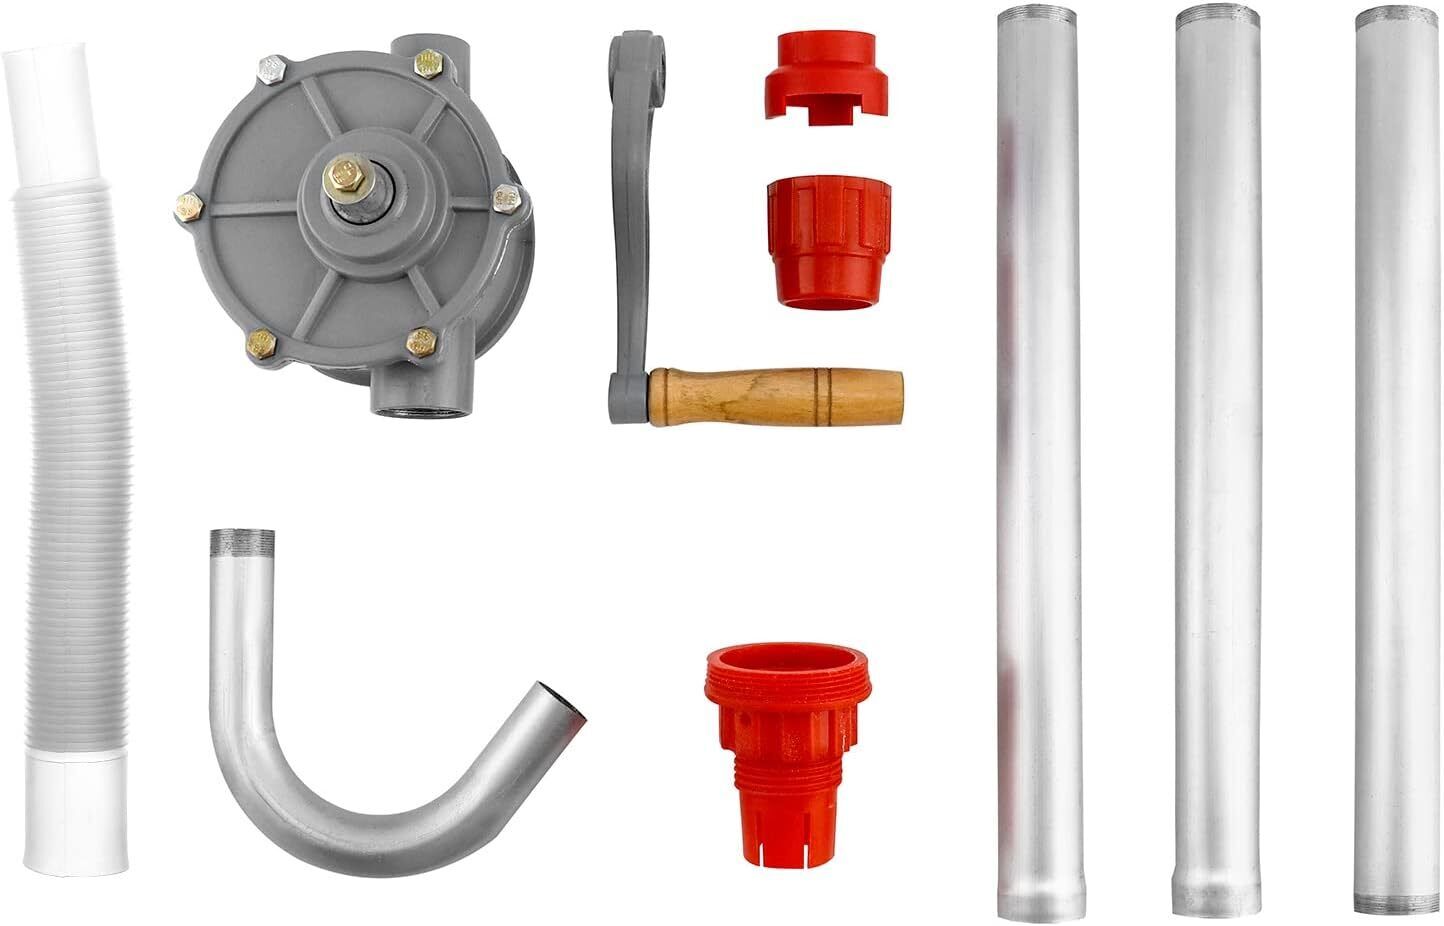 Aluminum Drum Rotary Hand Pump, Barrel Hand Crank Oil Barrel Rotary Oil Fuel  US